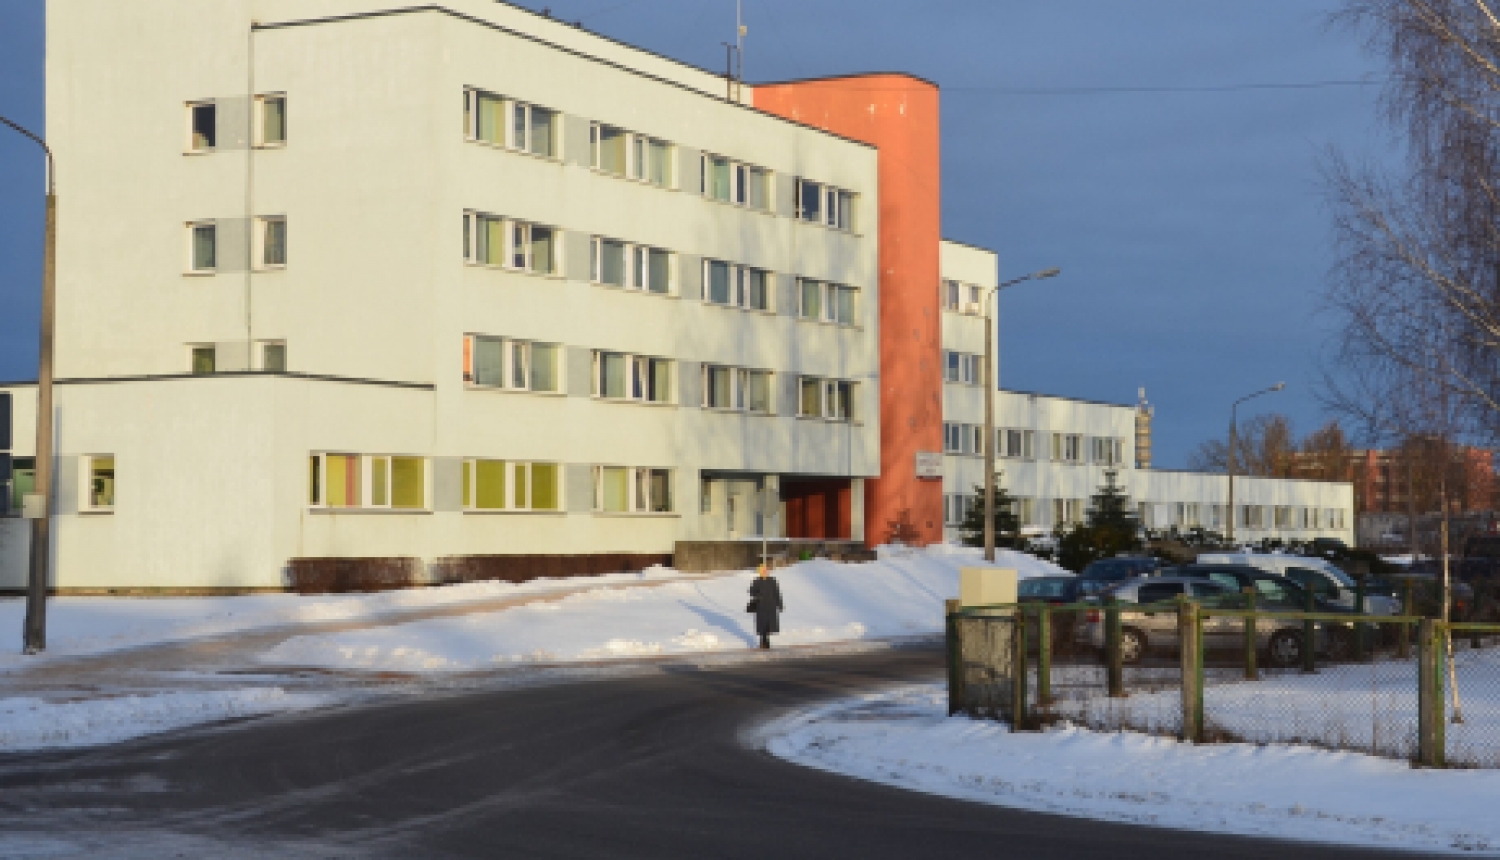 Prioritārās grupas var pieteikties vakcinācijai Jēkabpils reģionālās slimnīcas ambulatorajā daļā